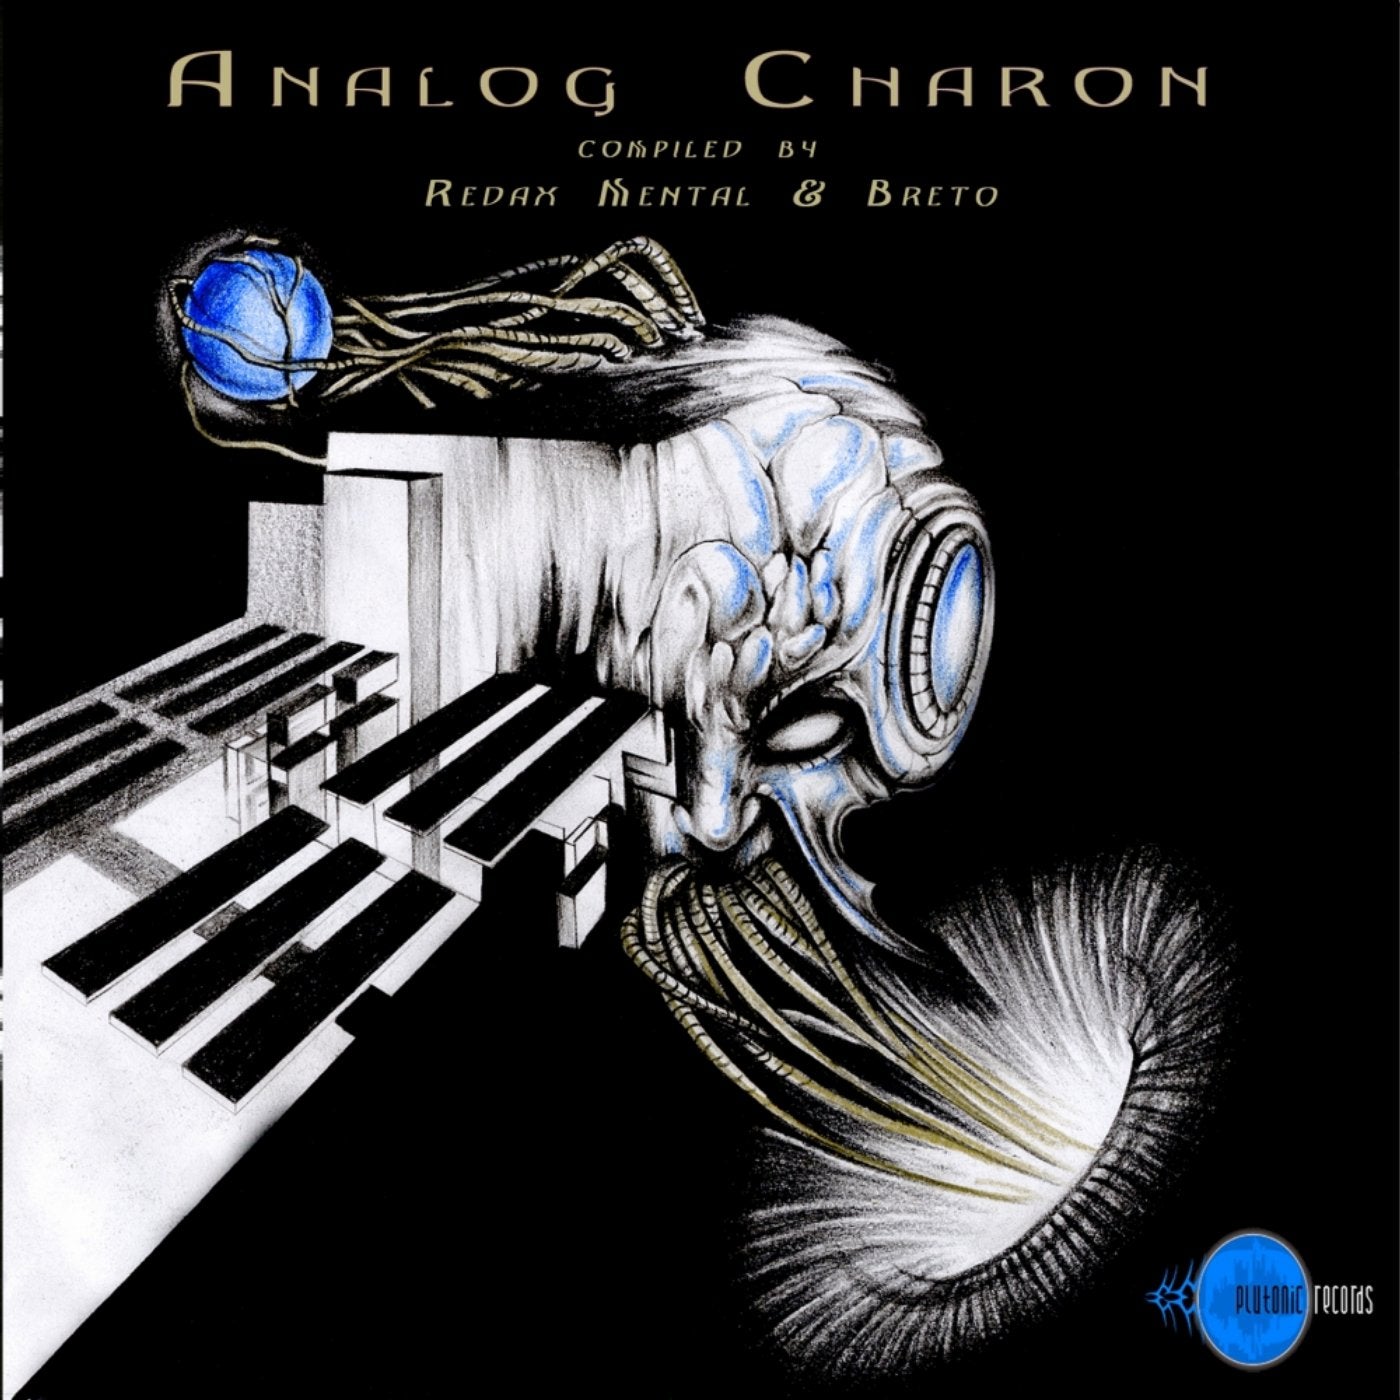 Analog Charon